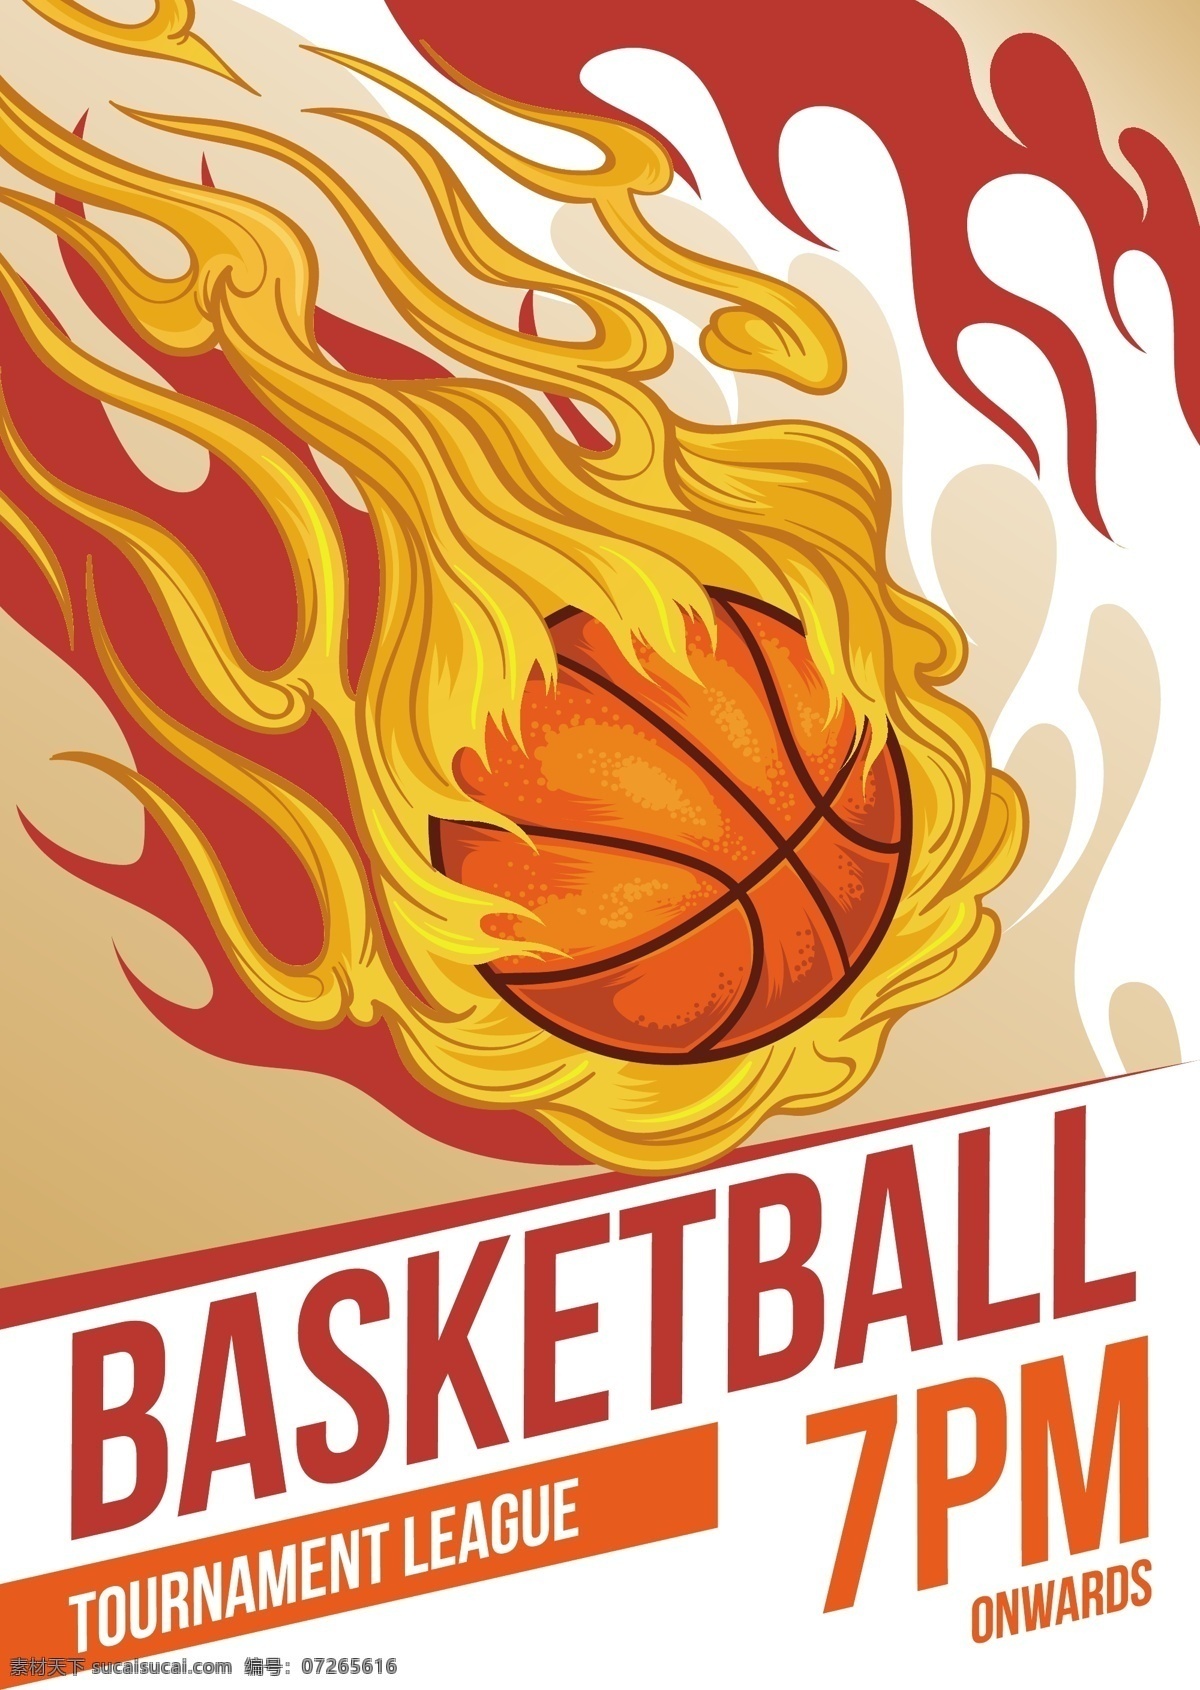 熊熊 篮球 小册子 传单 封面 模板 叶子 运动 健身 宣传册模板 火灾 健康 游戏 团队 文具 传单模板 球